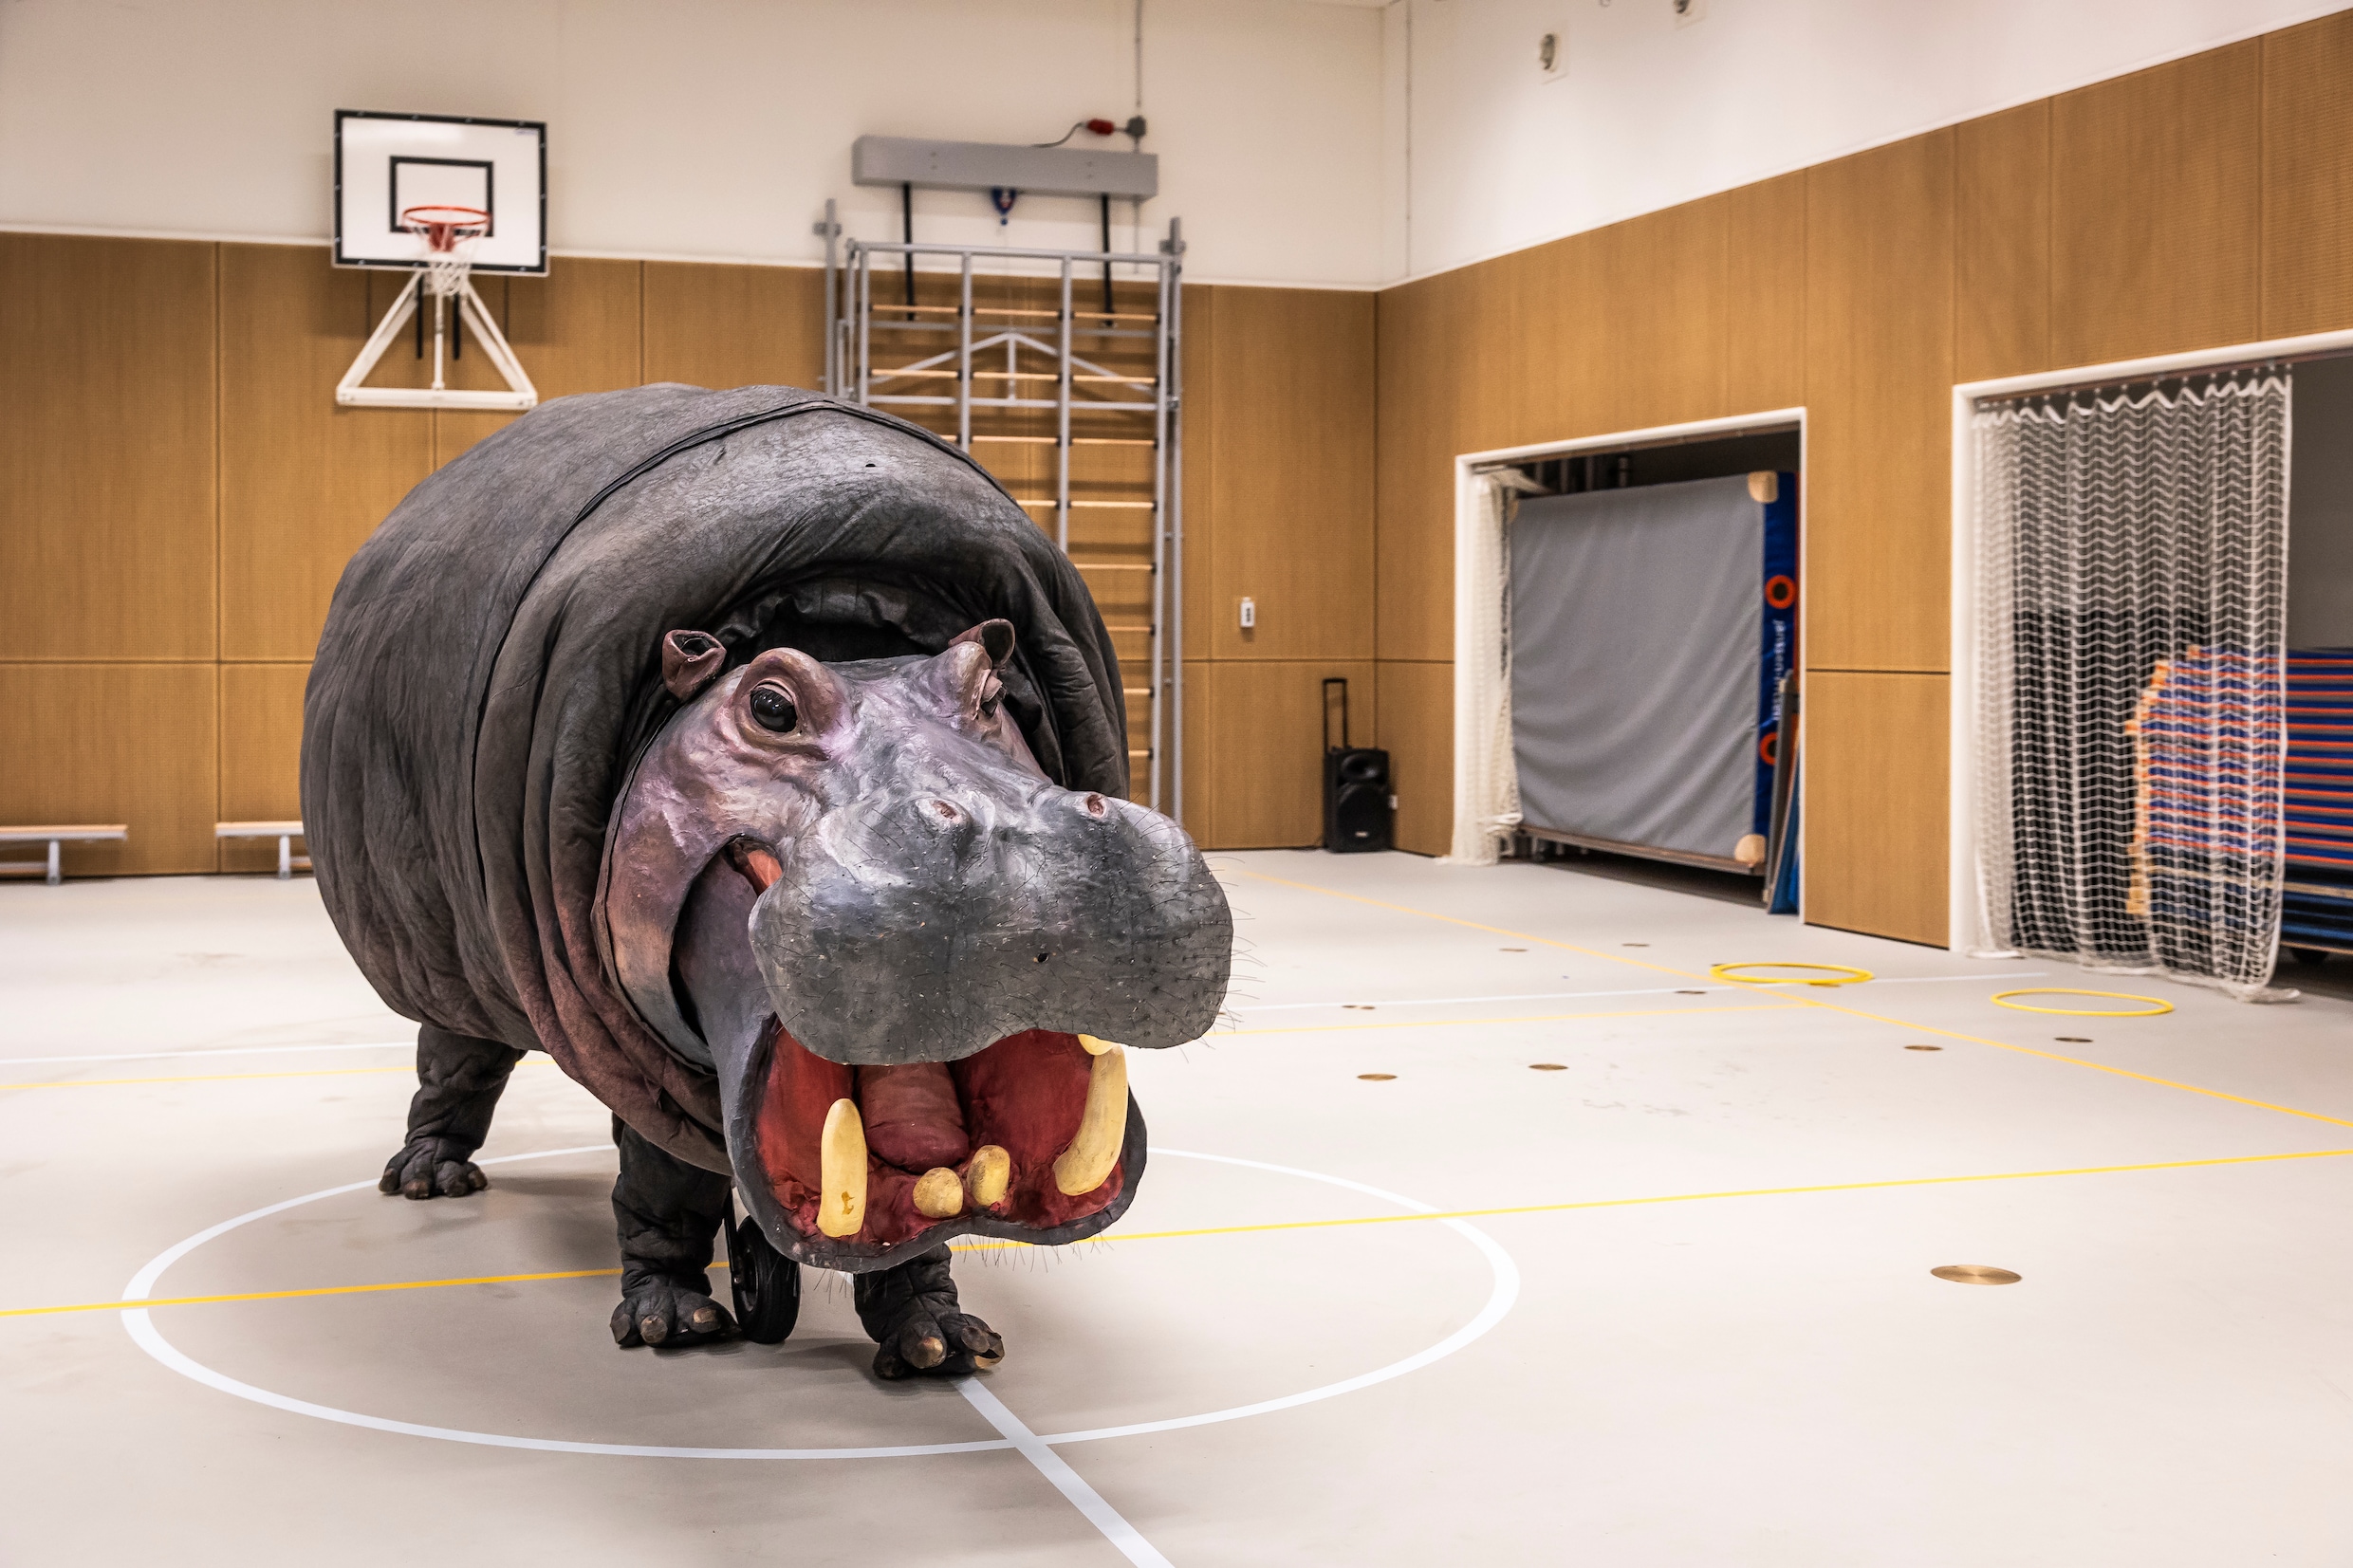 Hoe komt een jodelend nijlpaard op een festival? Teatro Pavana brengt met acteurs gigantische dieren tot leven met tranen, scheten en megafoons